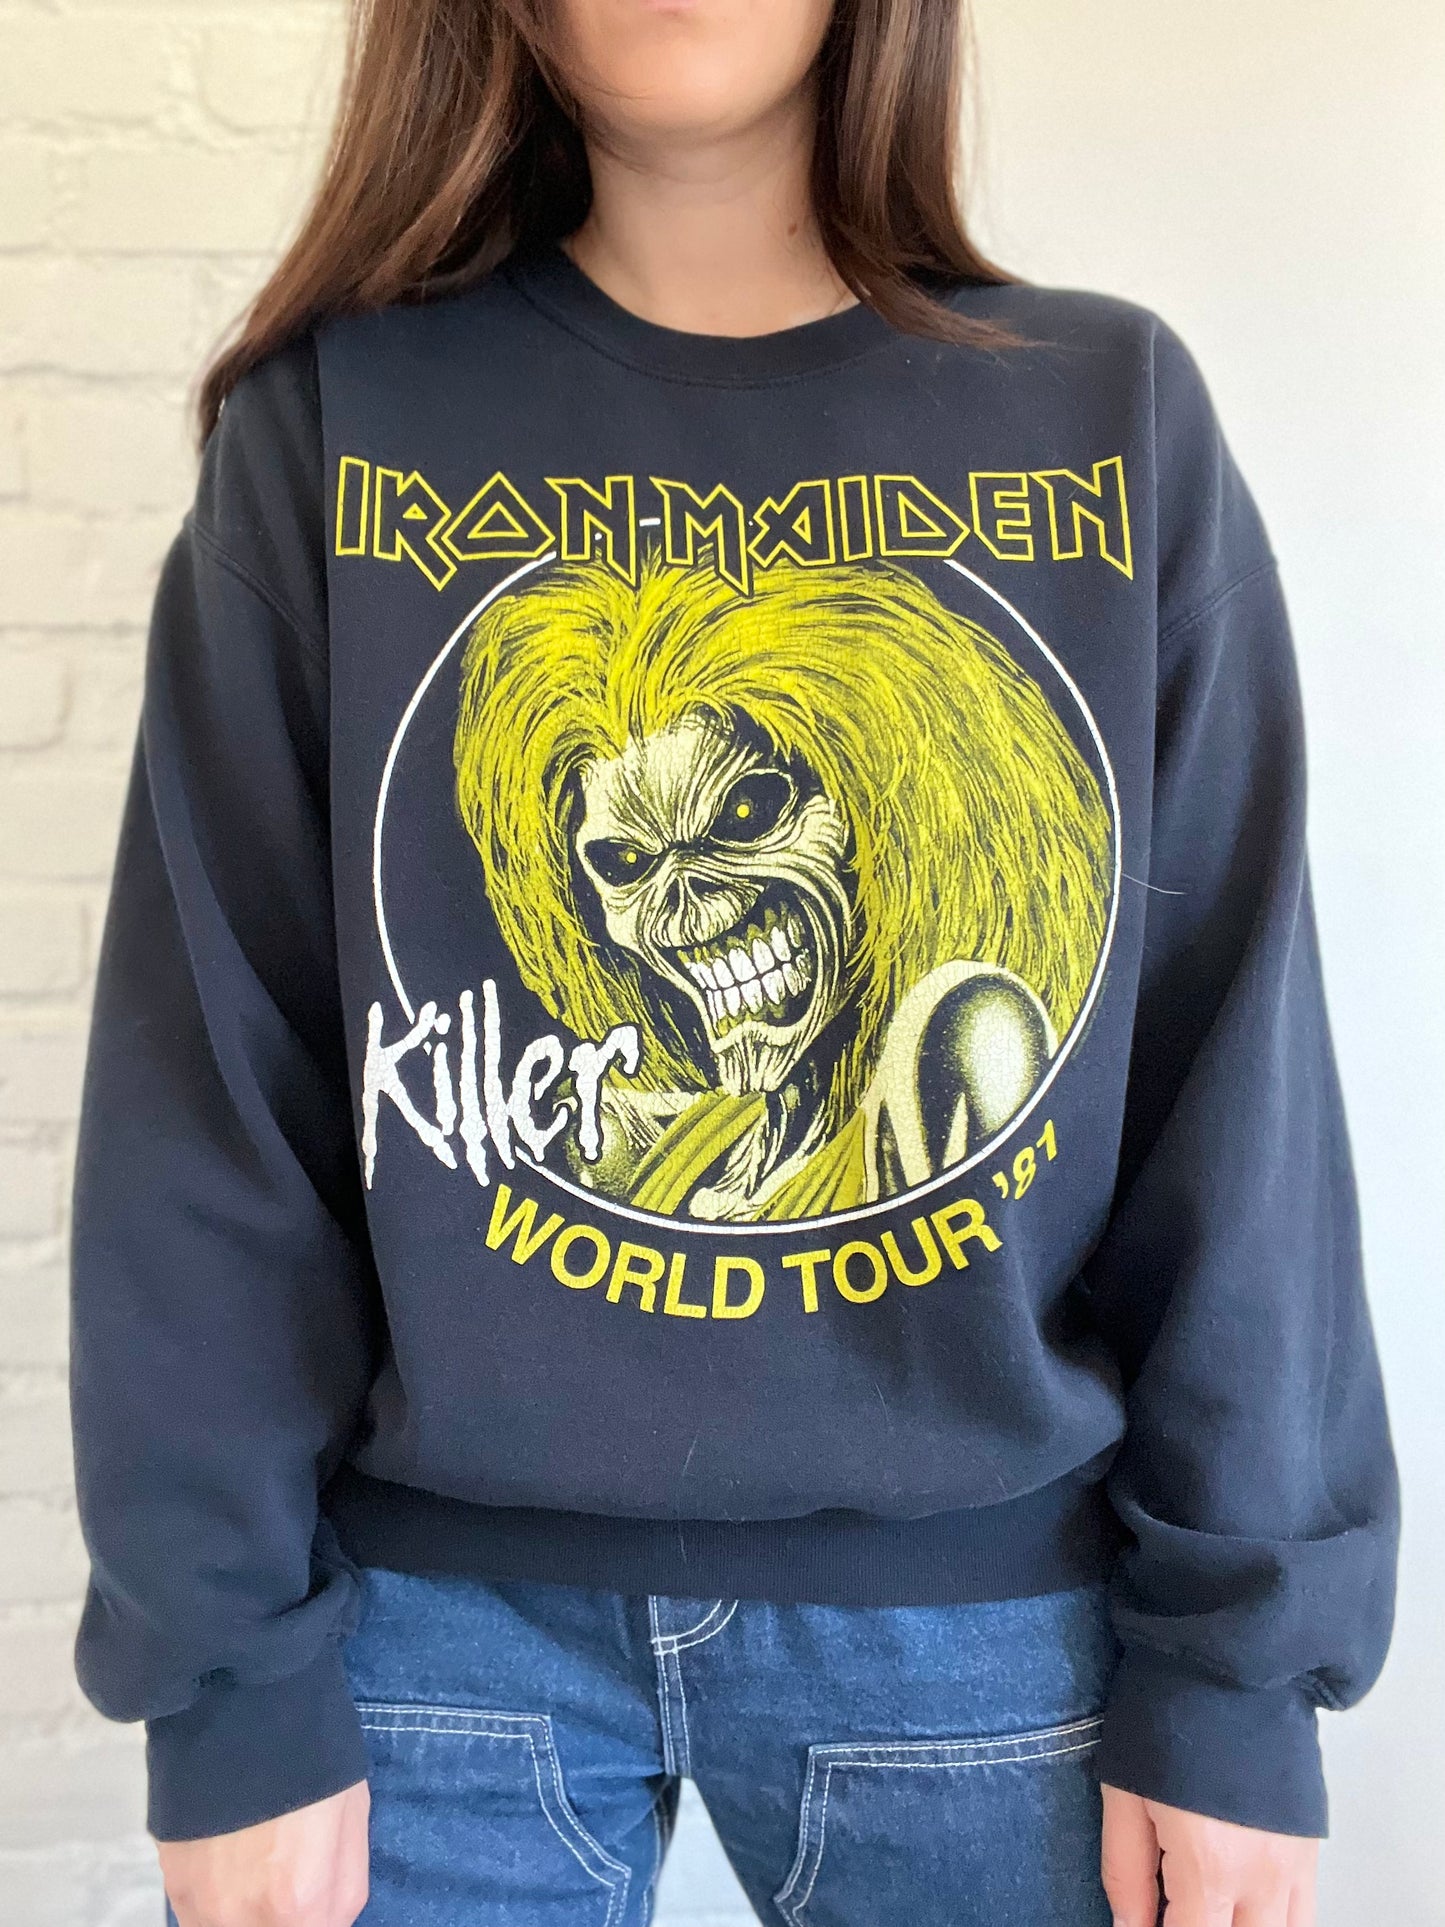 Iron Maiden '81 World Tour Crewneck - Size L